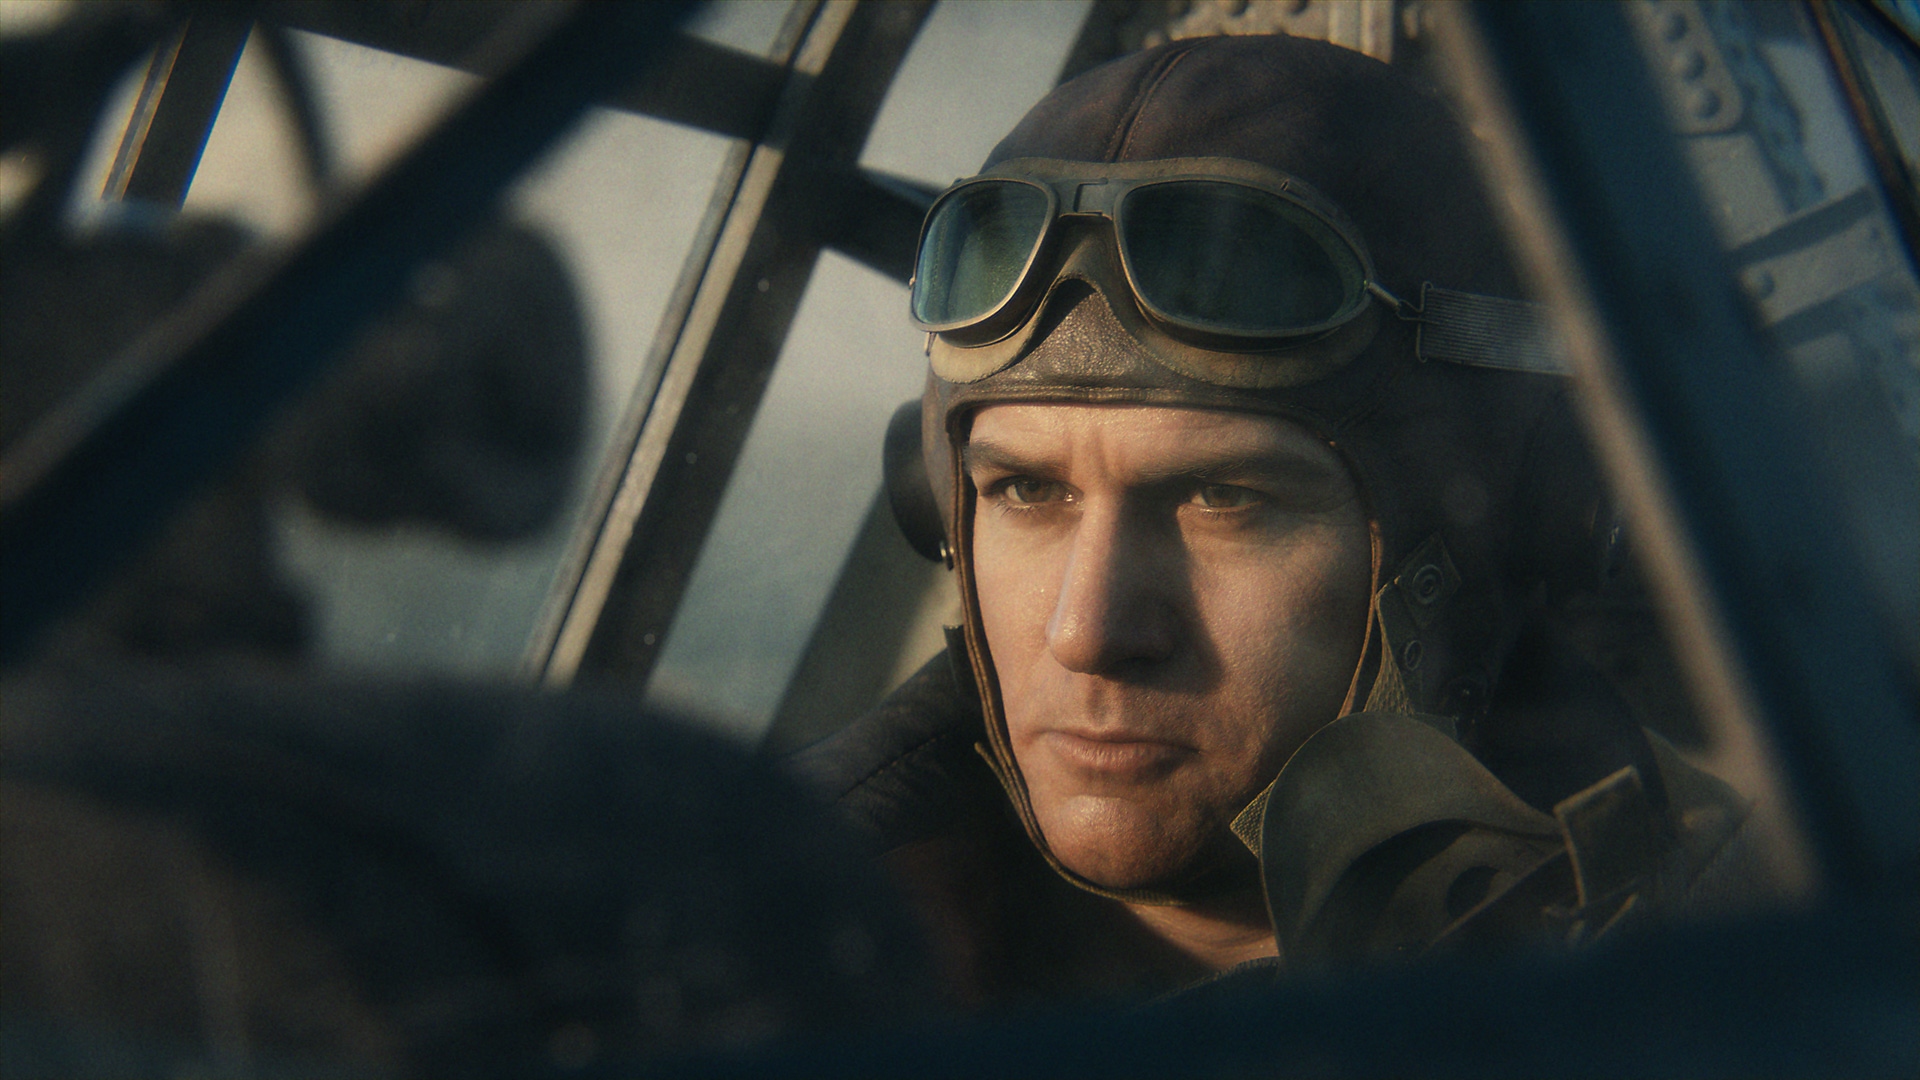 Call of Duty Vanguard – снимок экрана, на котором изображен пилот самолета времен Второй мировой войны